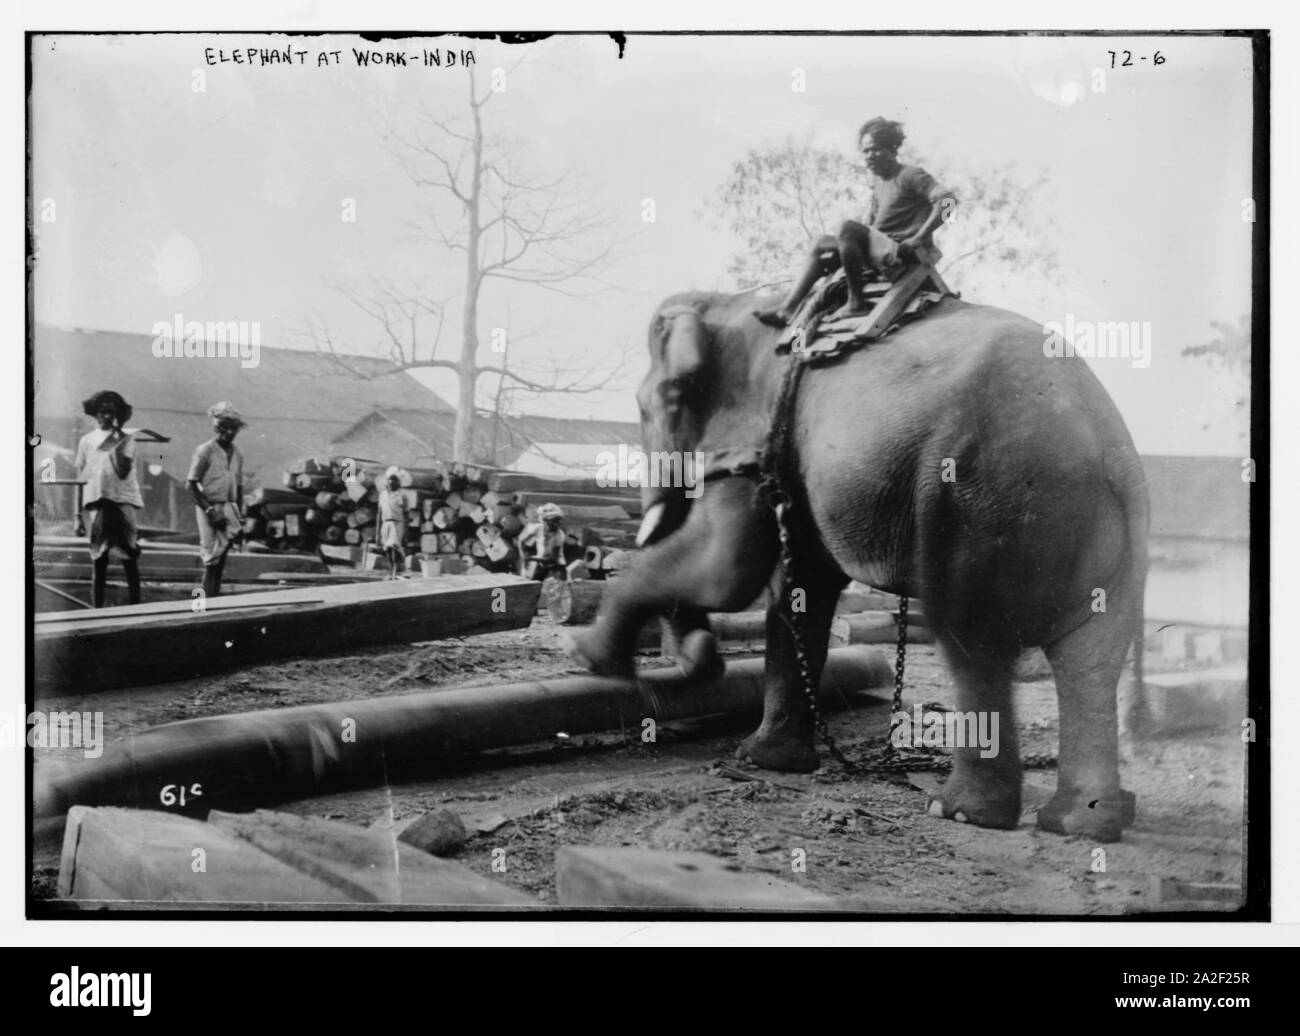 Elefanten arbeiten, Indien Stockfoto